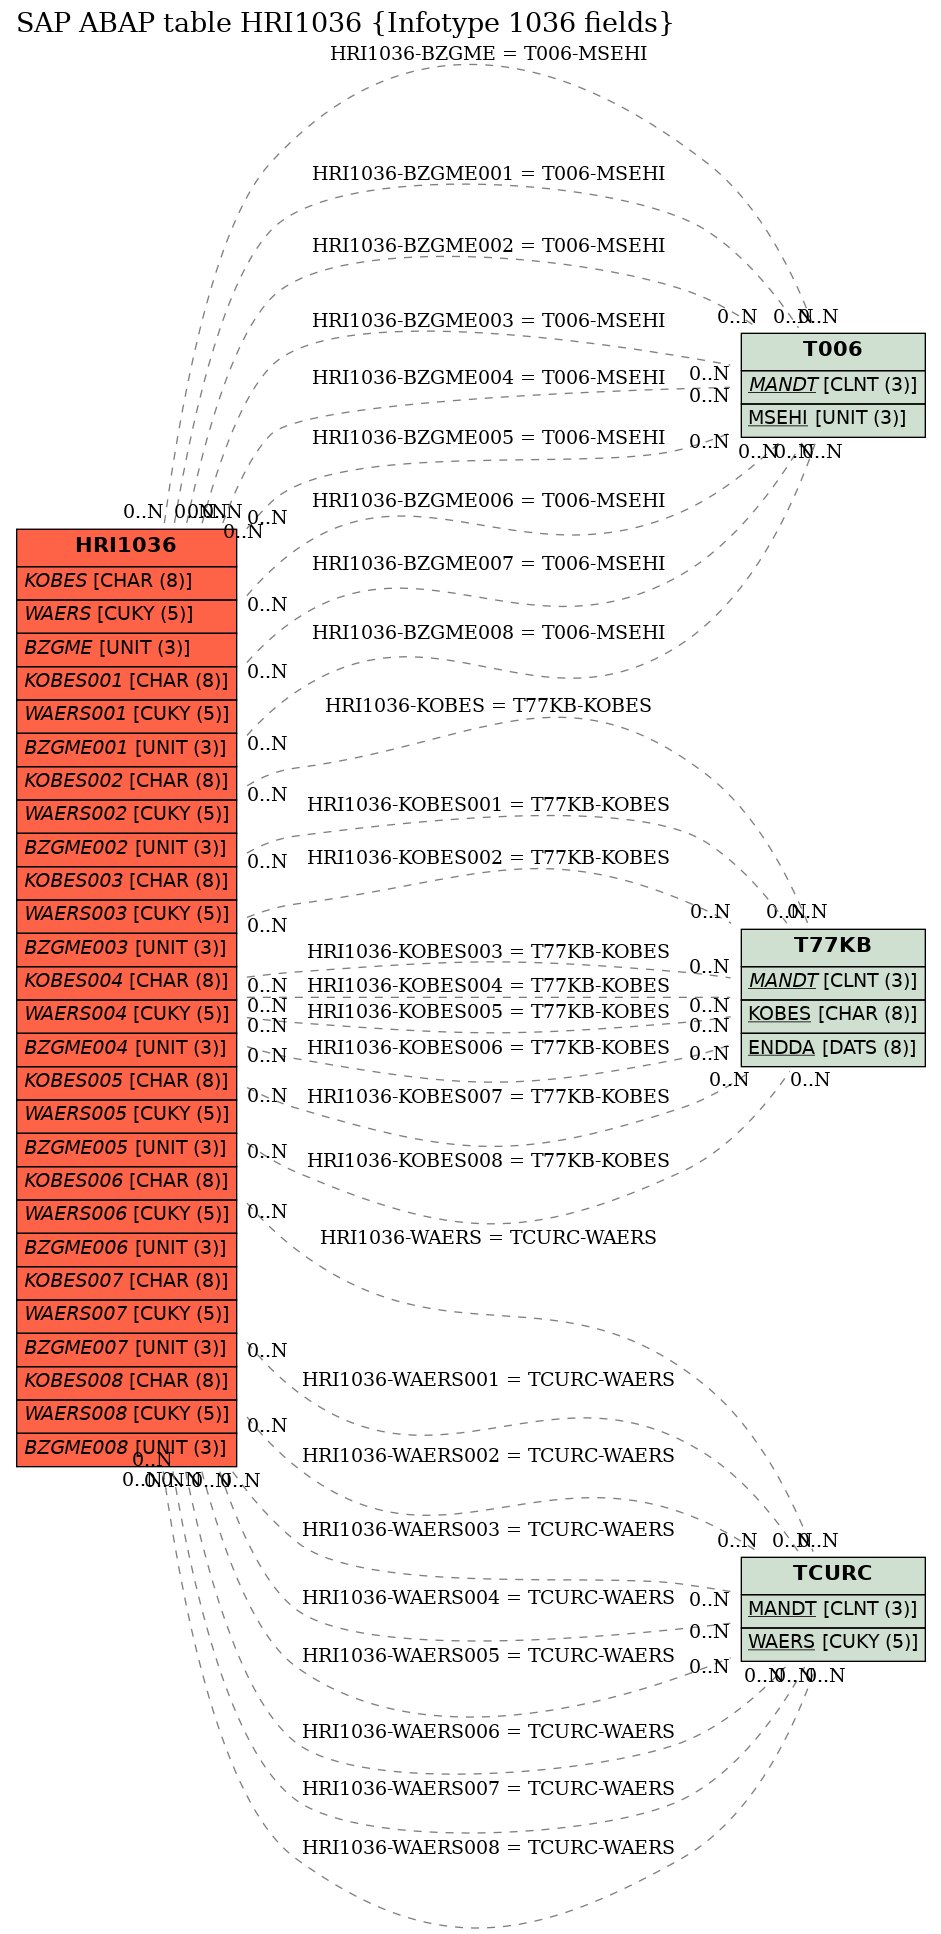 E-R Diagram for table HRI1036 (Infotype 1036 fields)